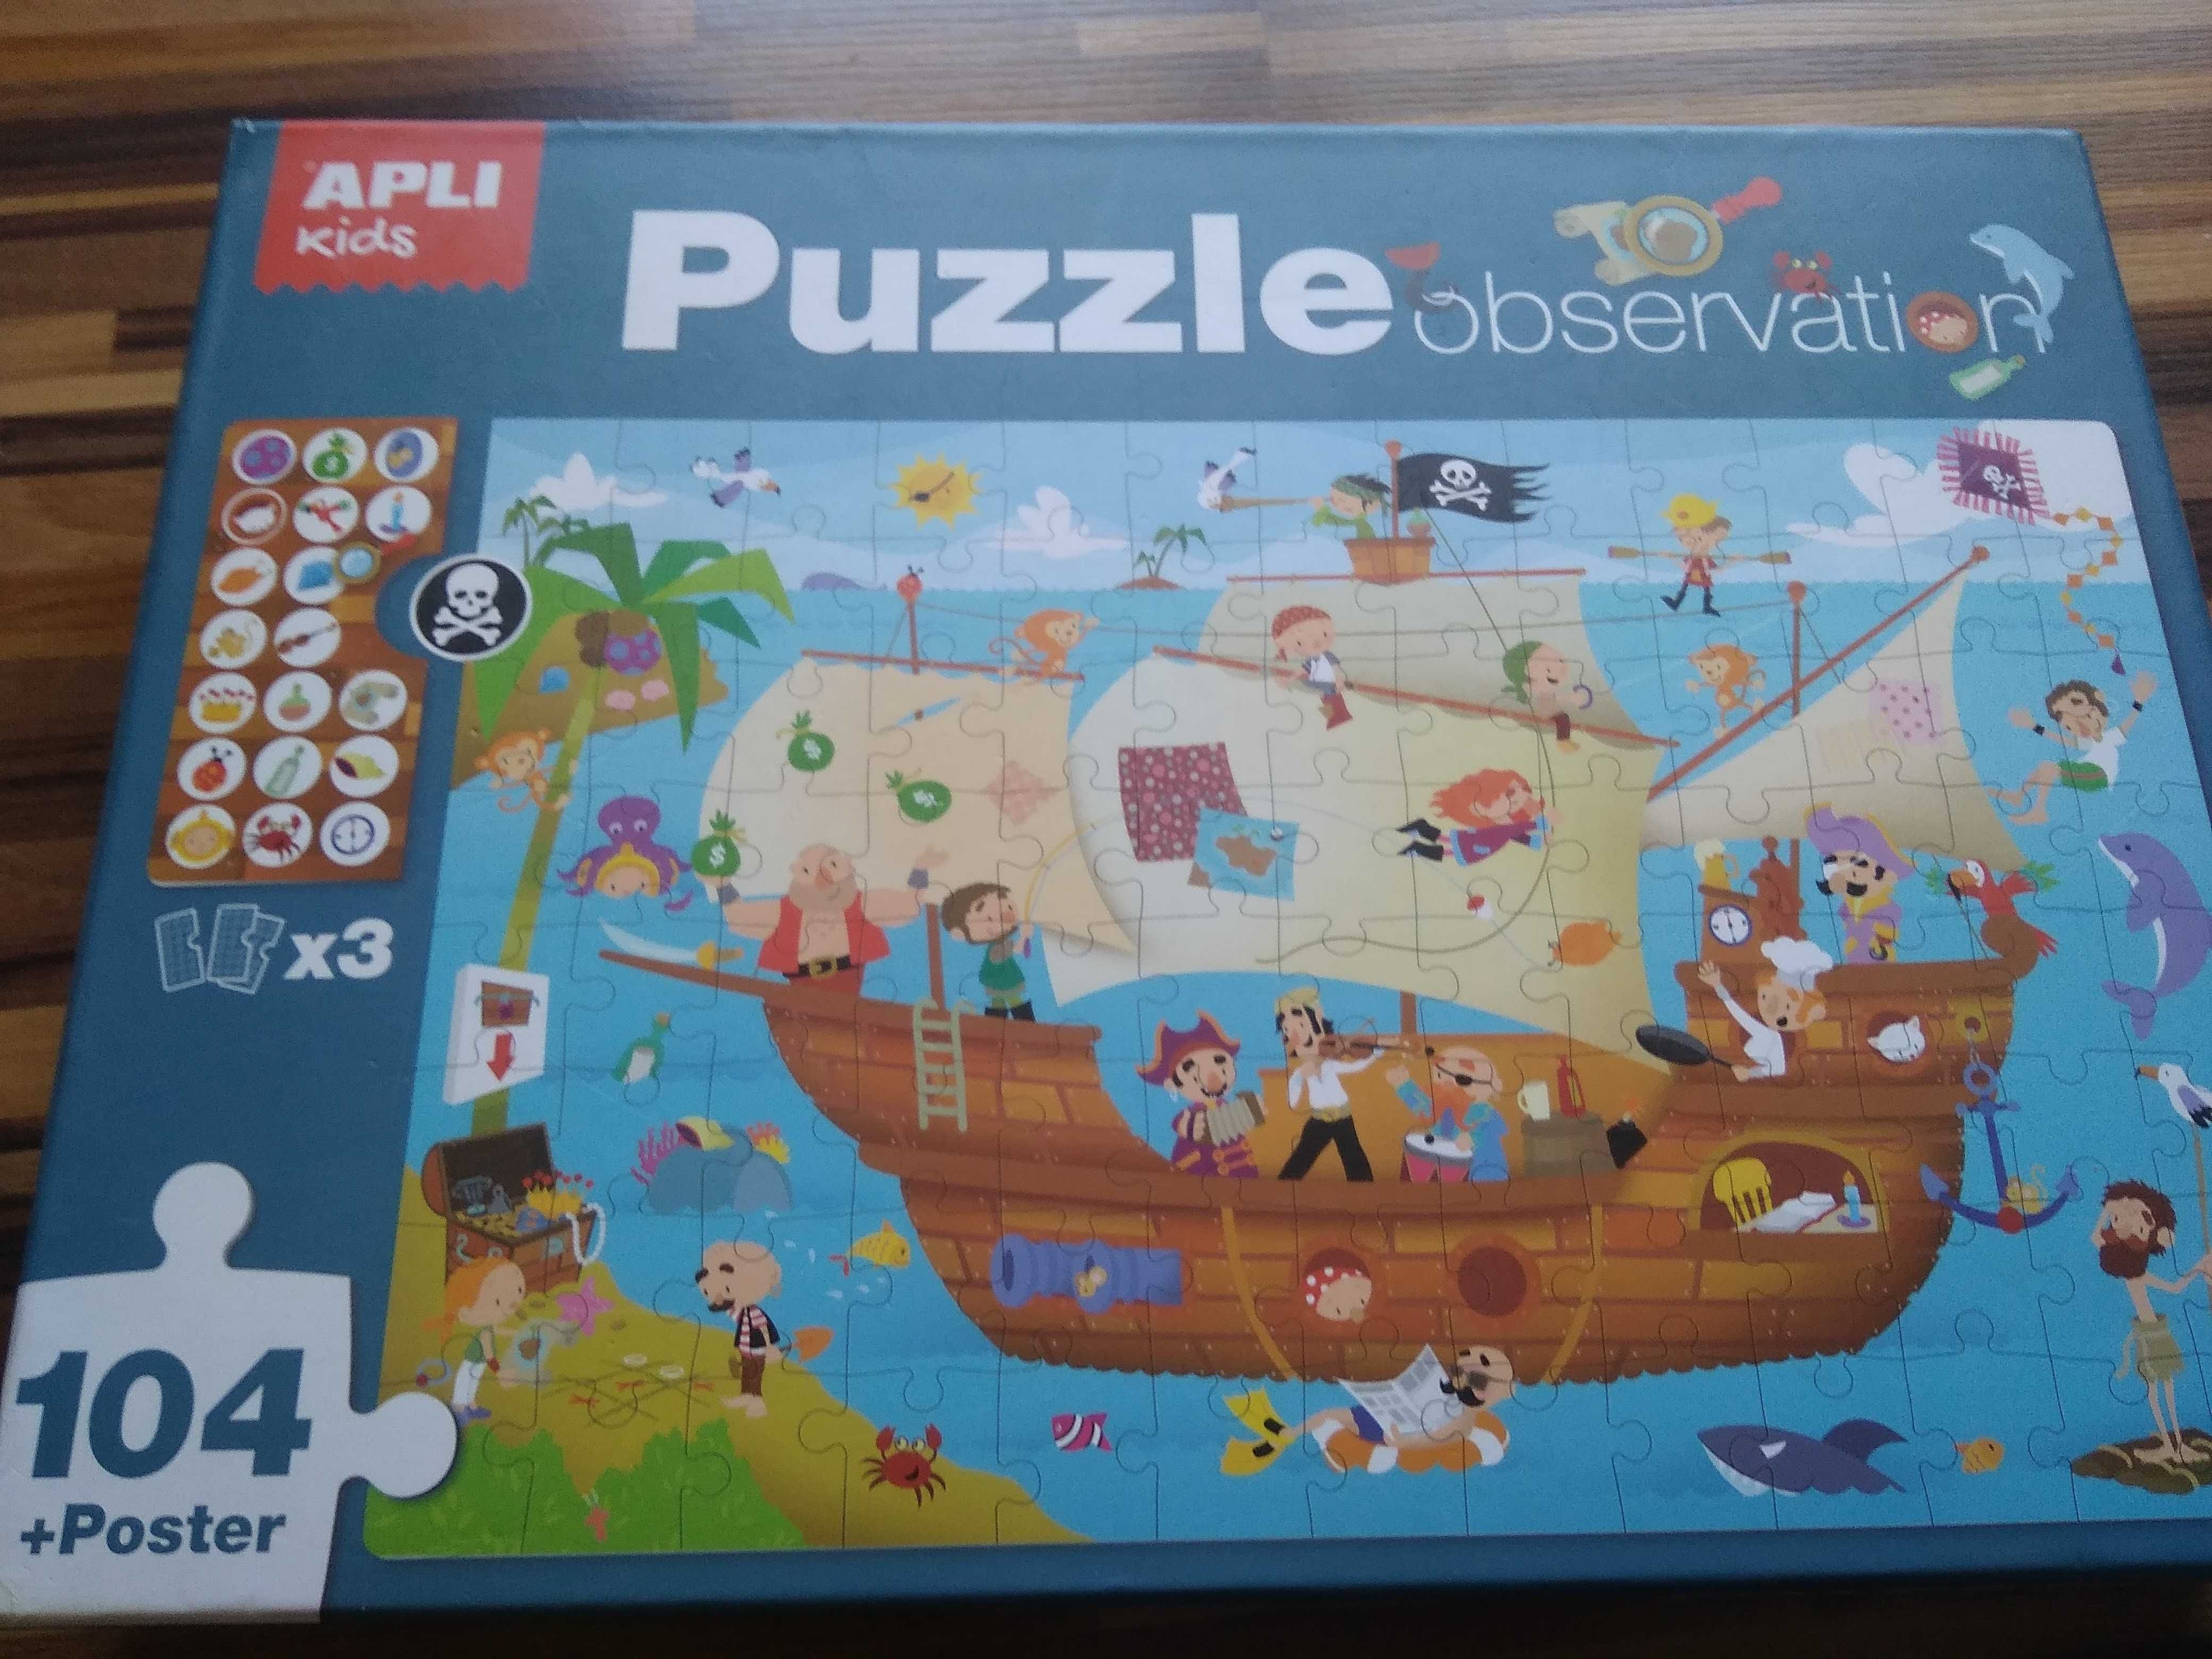 Apli Kids, Statek piratów, puzzle obserwacyjne, 104 elementy